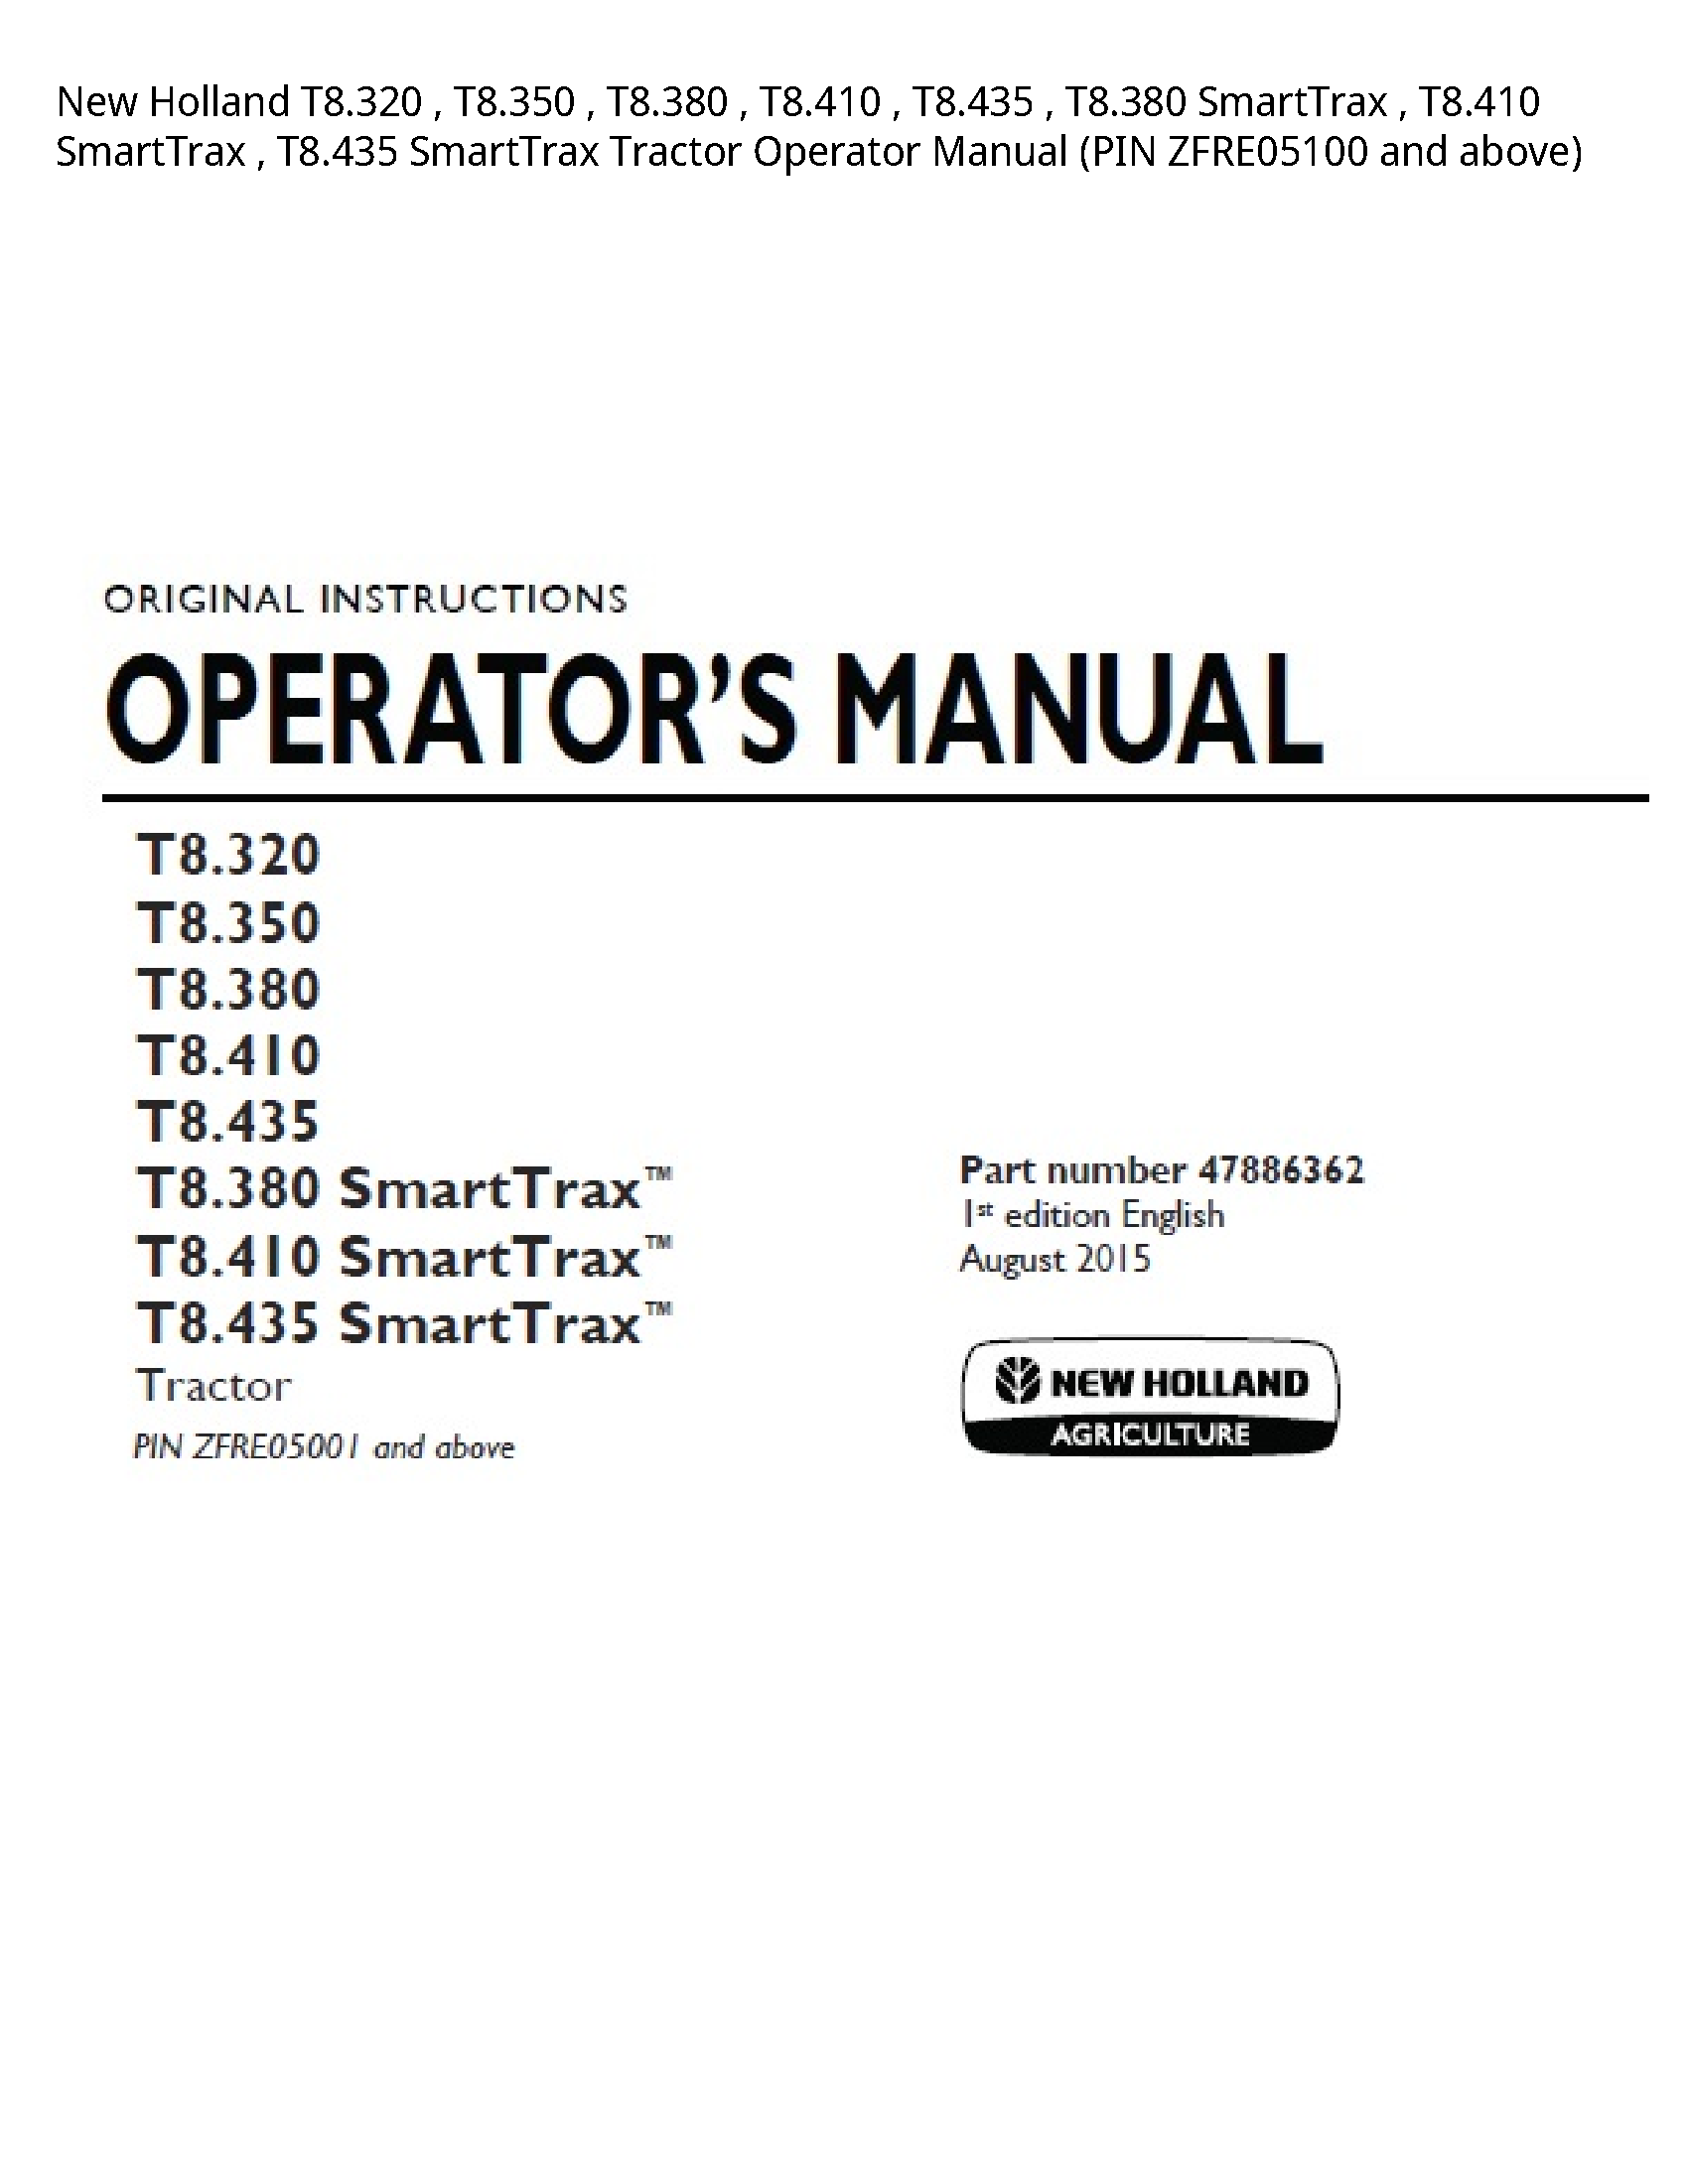 New Holland T8.320 SmartTrax SmartTrax SmartTrax Tractor Operator manual